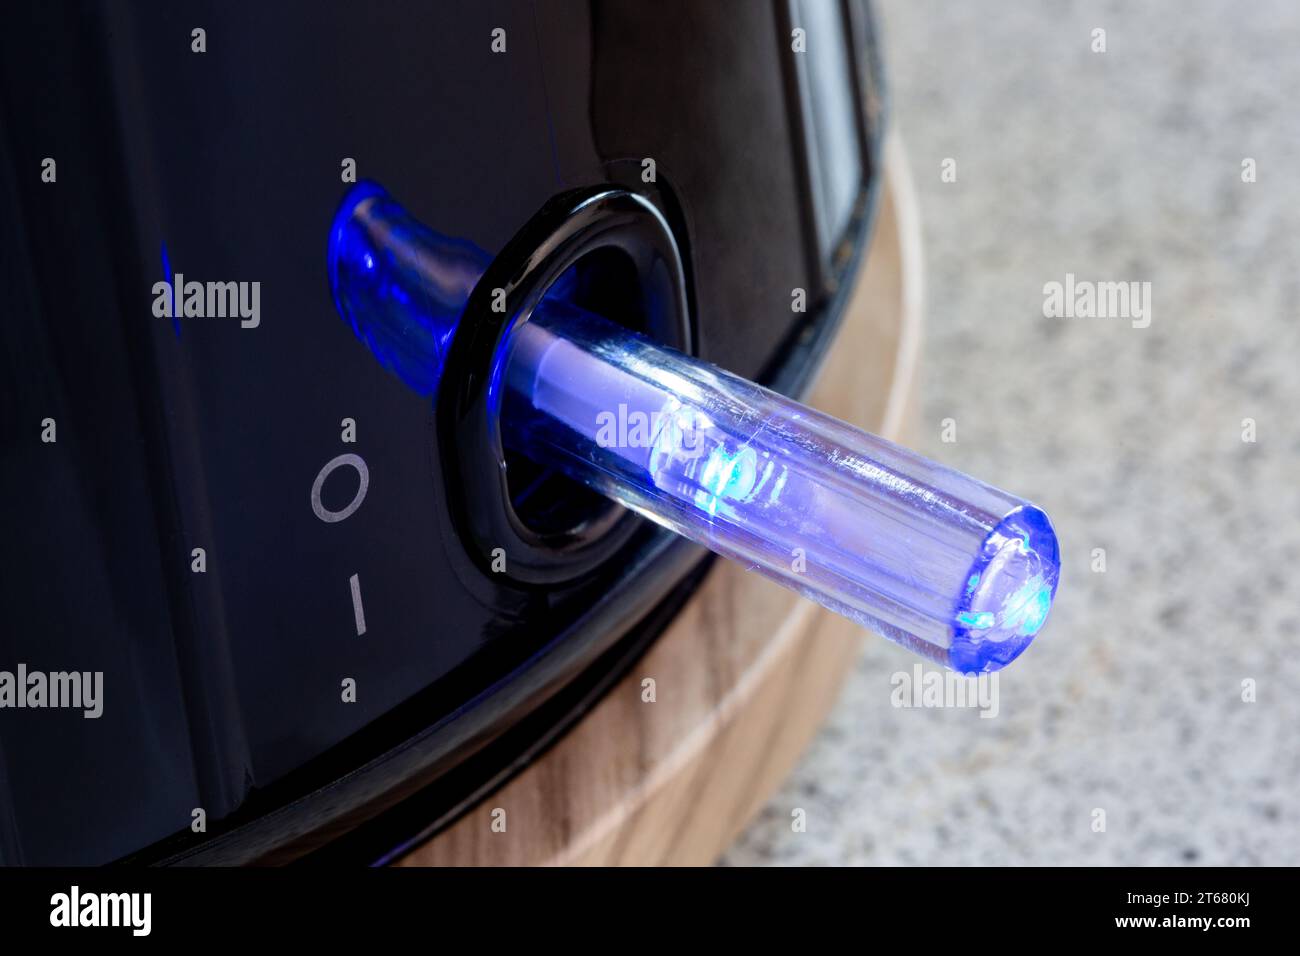 Le bouton d'alimentation de la bouilloire électrique s'allume en bleu Banque D'Images